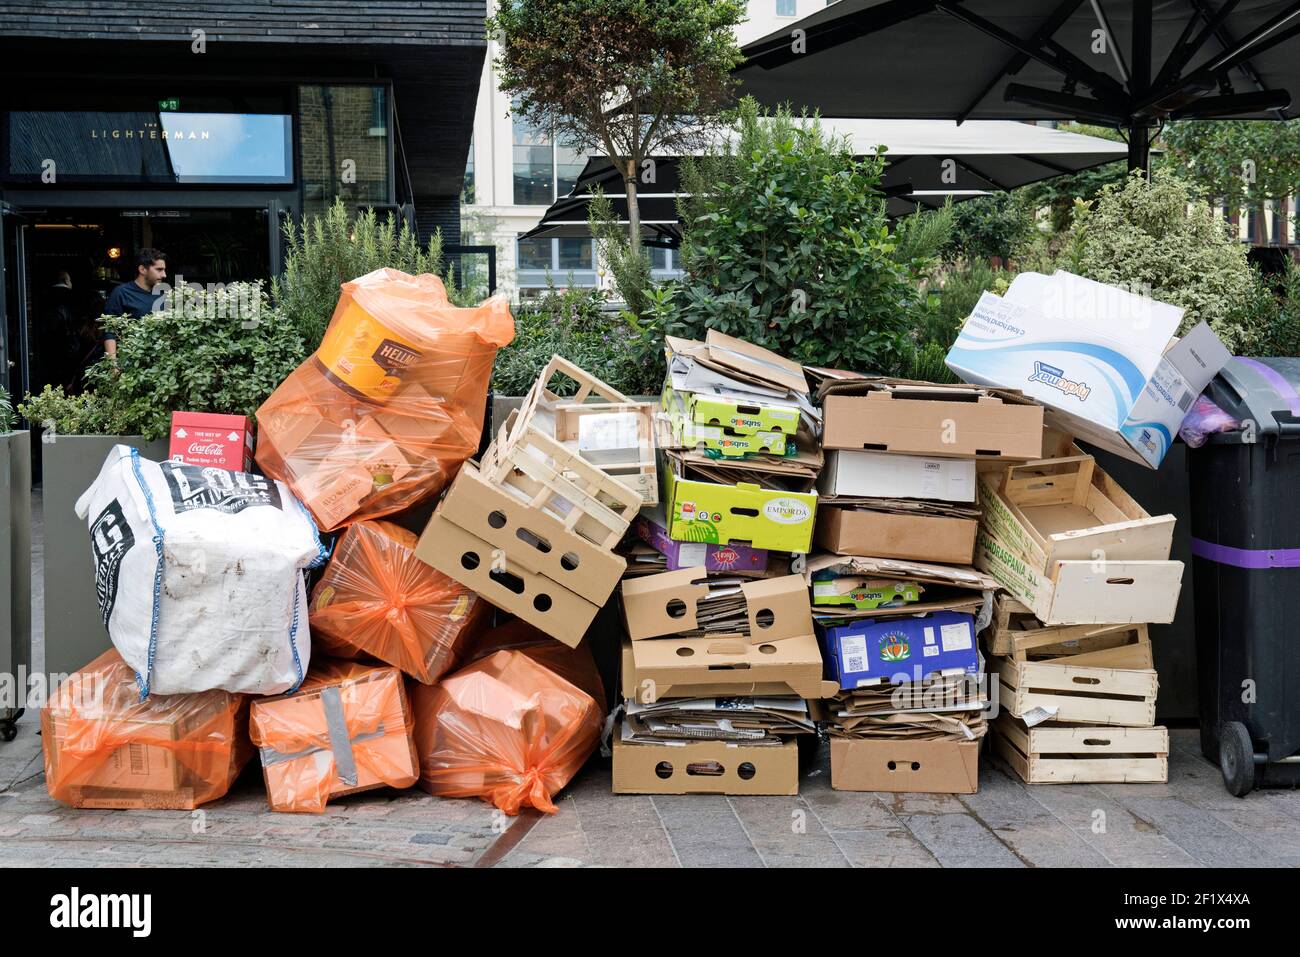 Pile di rifiuti, tra cui scatole di cartone e frutta in legno accatastate All'esterno del Lighterman Restaurant Granary Square vi attende la collezione Kings Croce Foto Stock